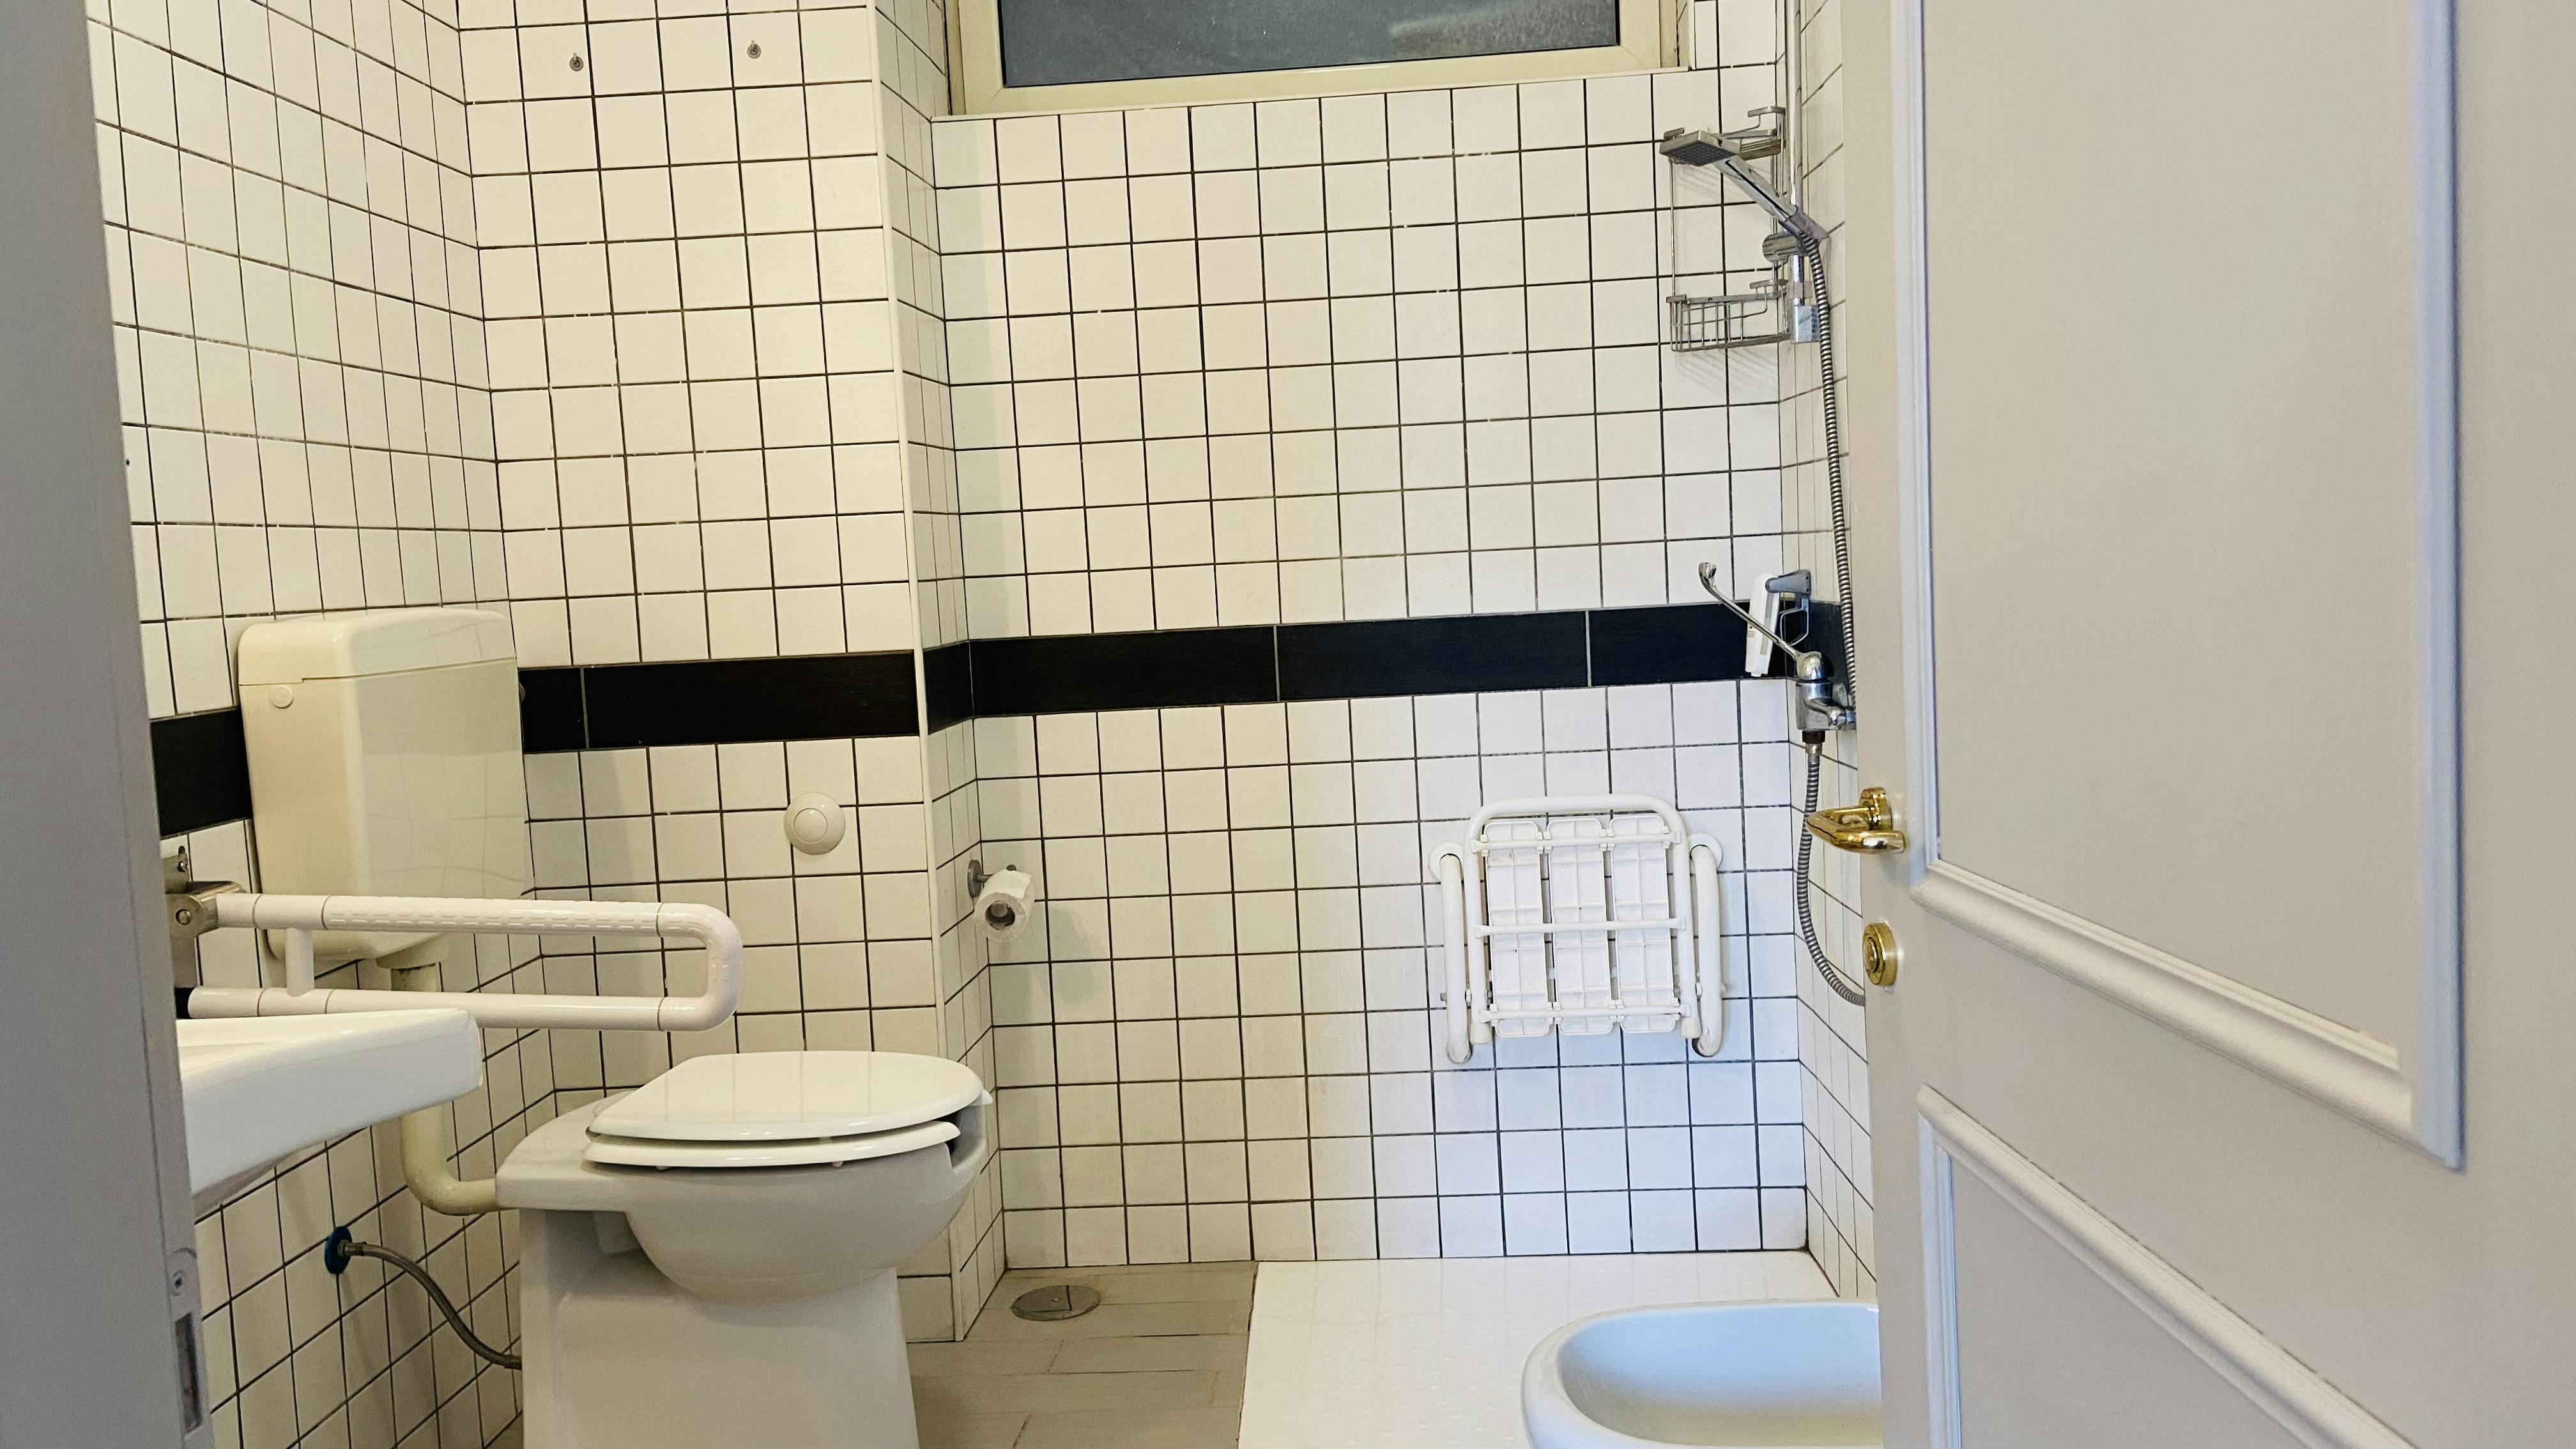 Bathroom Of Double Handicap Room